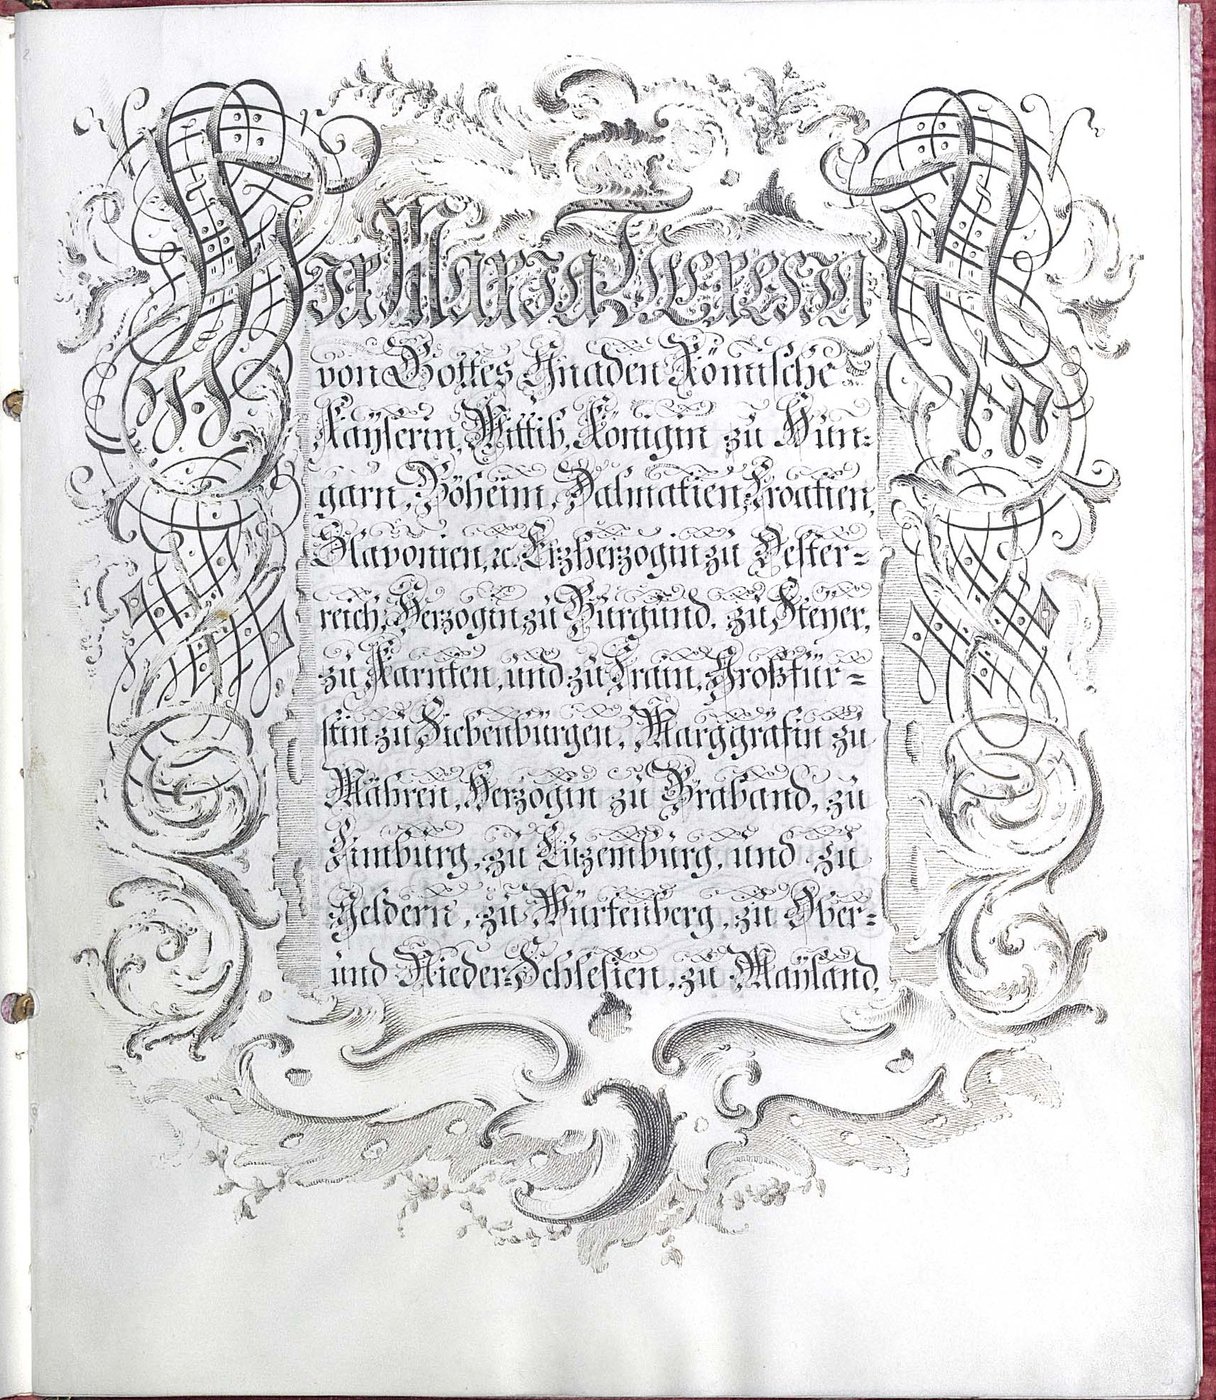 Kunstvoll ausgeschmücktes Titelblatt mit dem vollständigen Titel der Kaiserin Maria Theresia